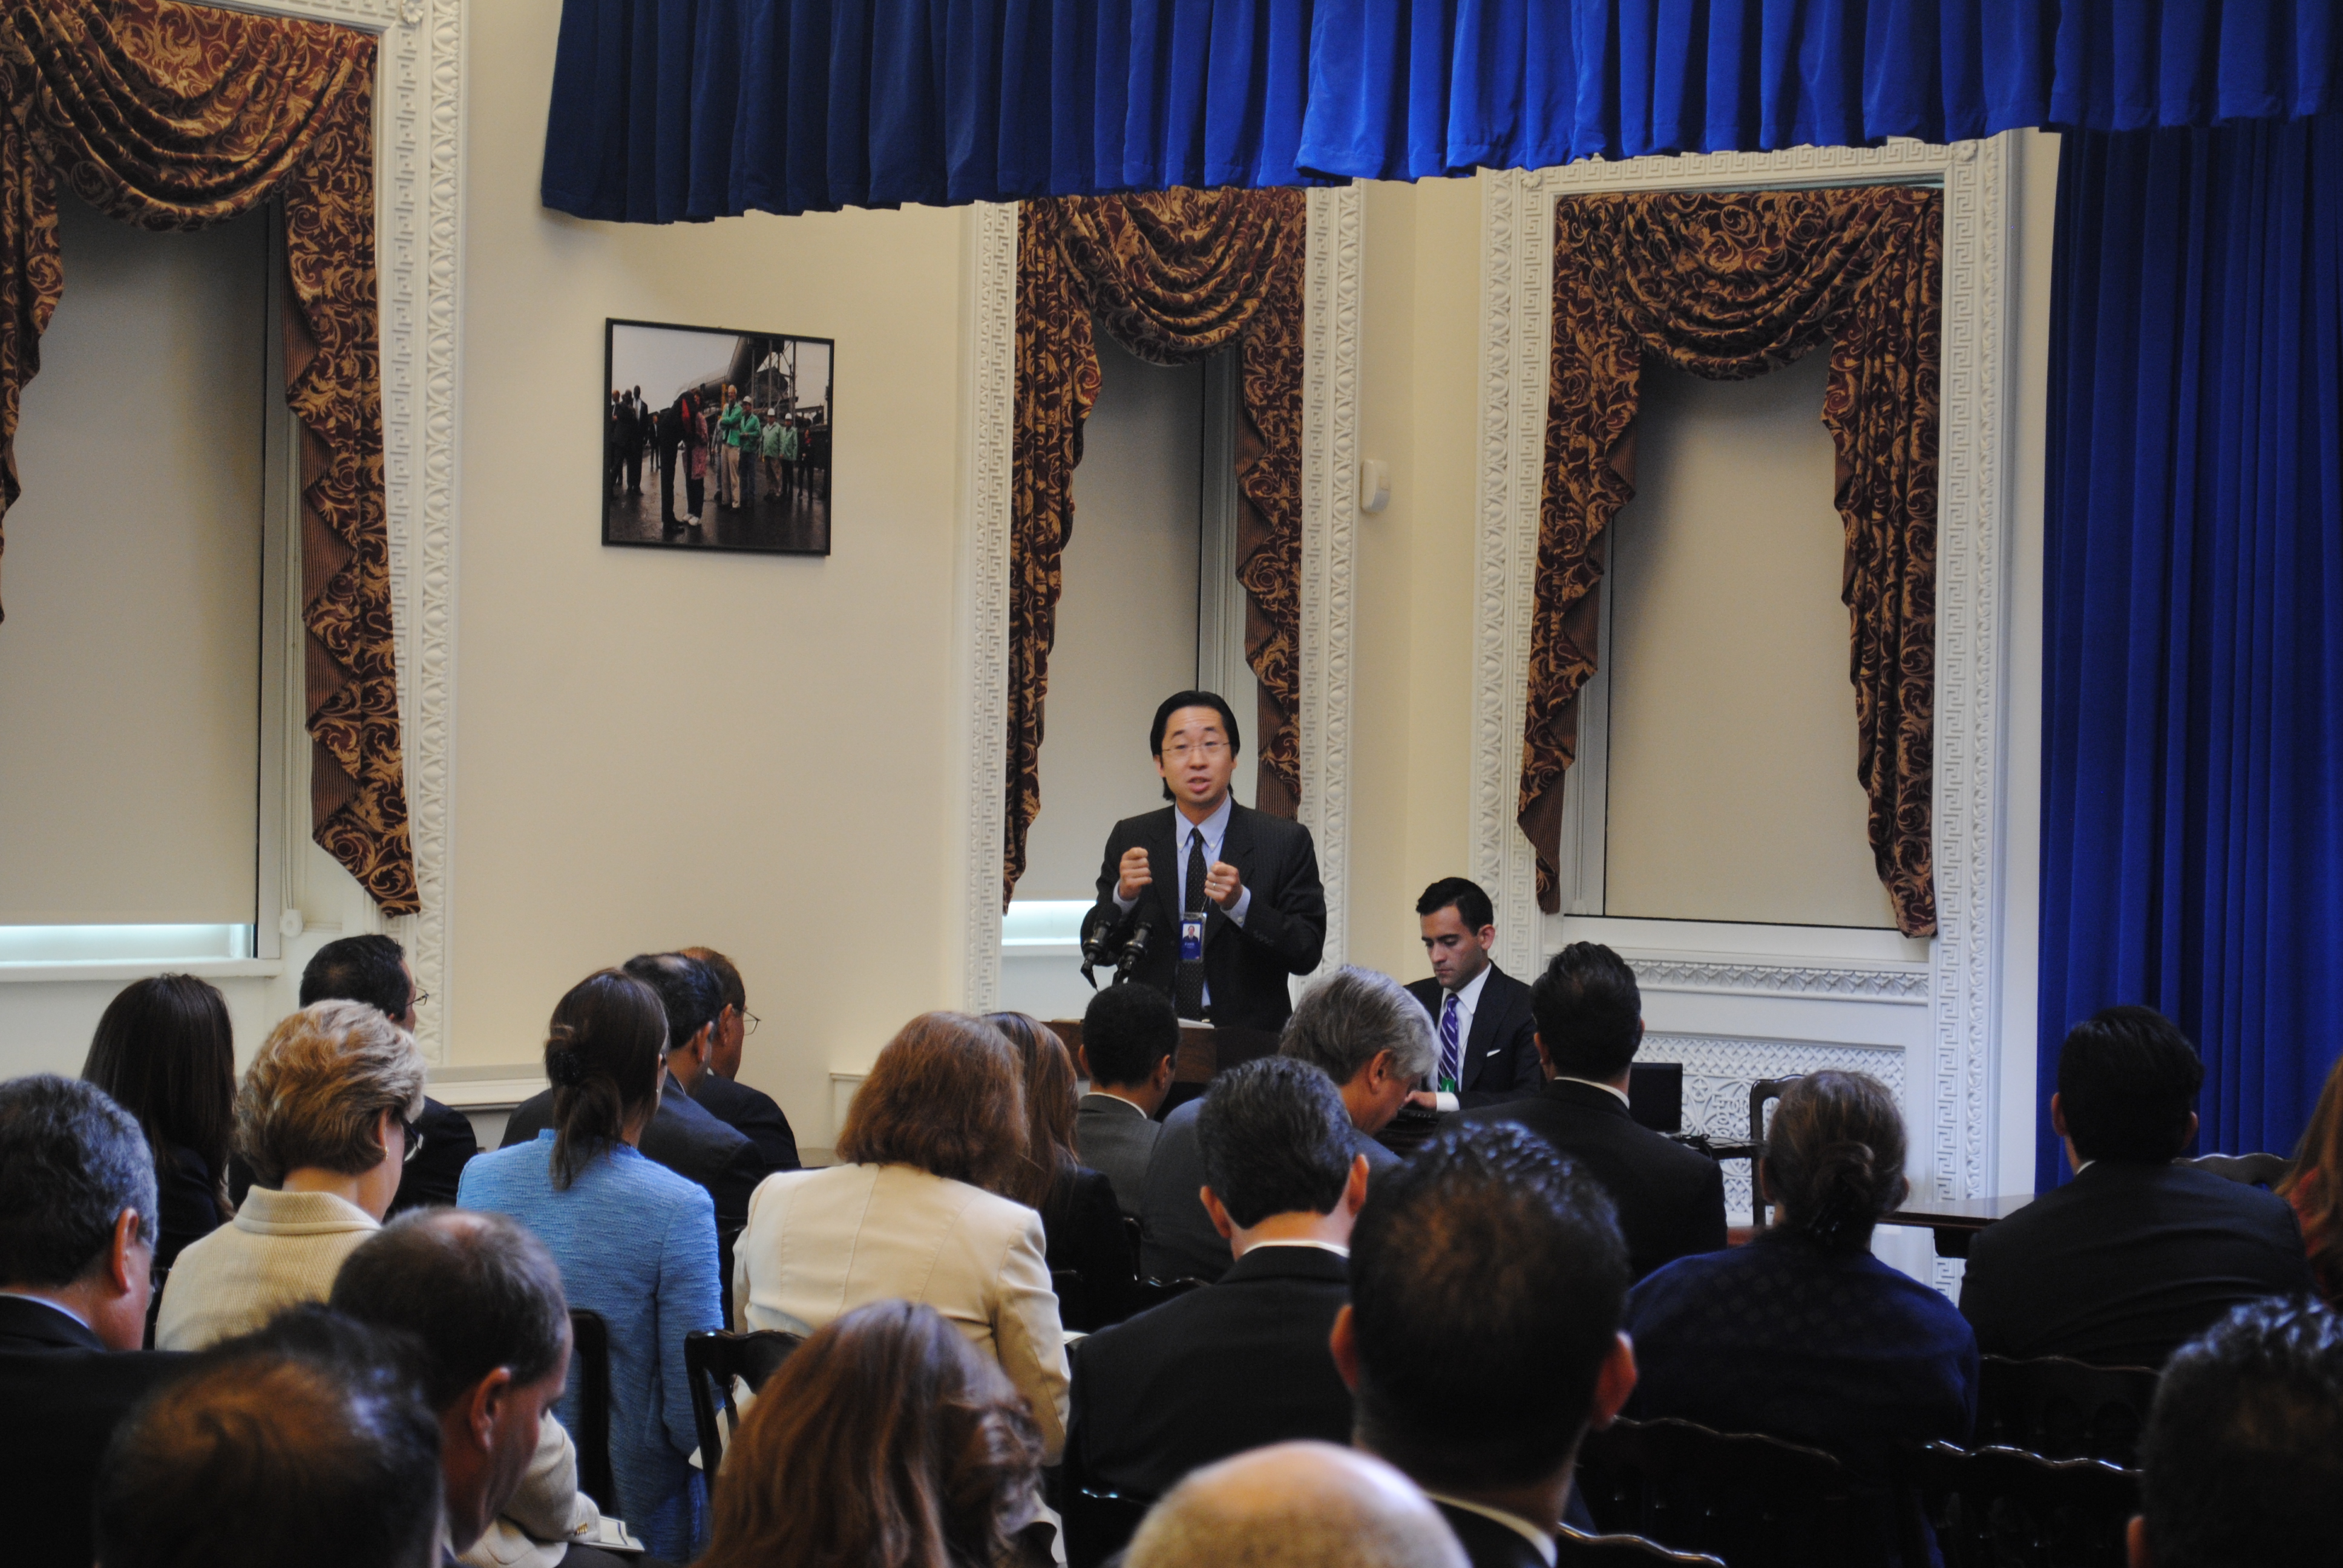 Todd Park, Asistente para el Presidente y Director de Tecnología de la Casa Blanca, habla durante una mesa redonda sobre 